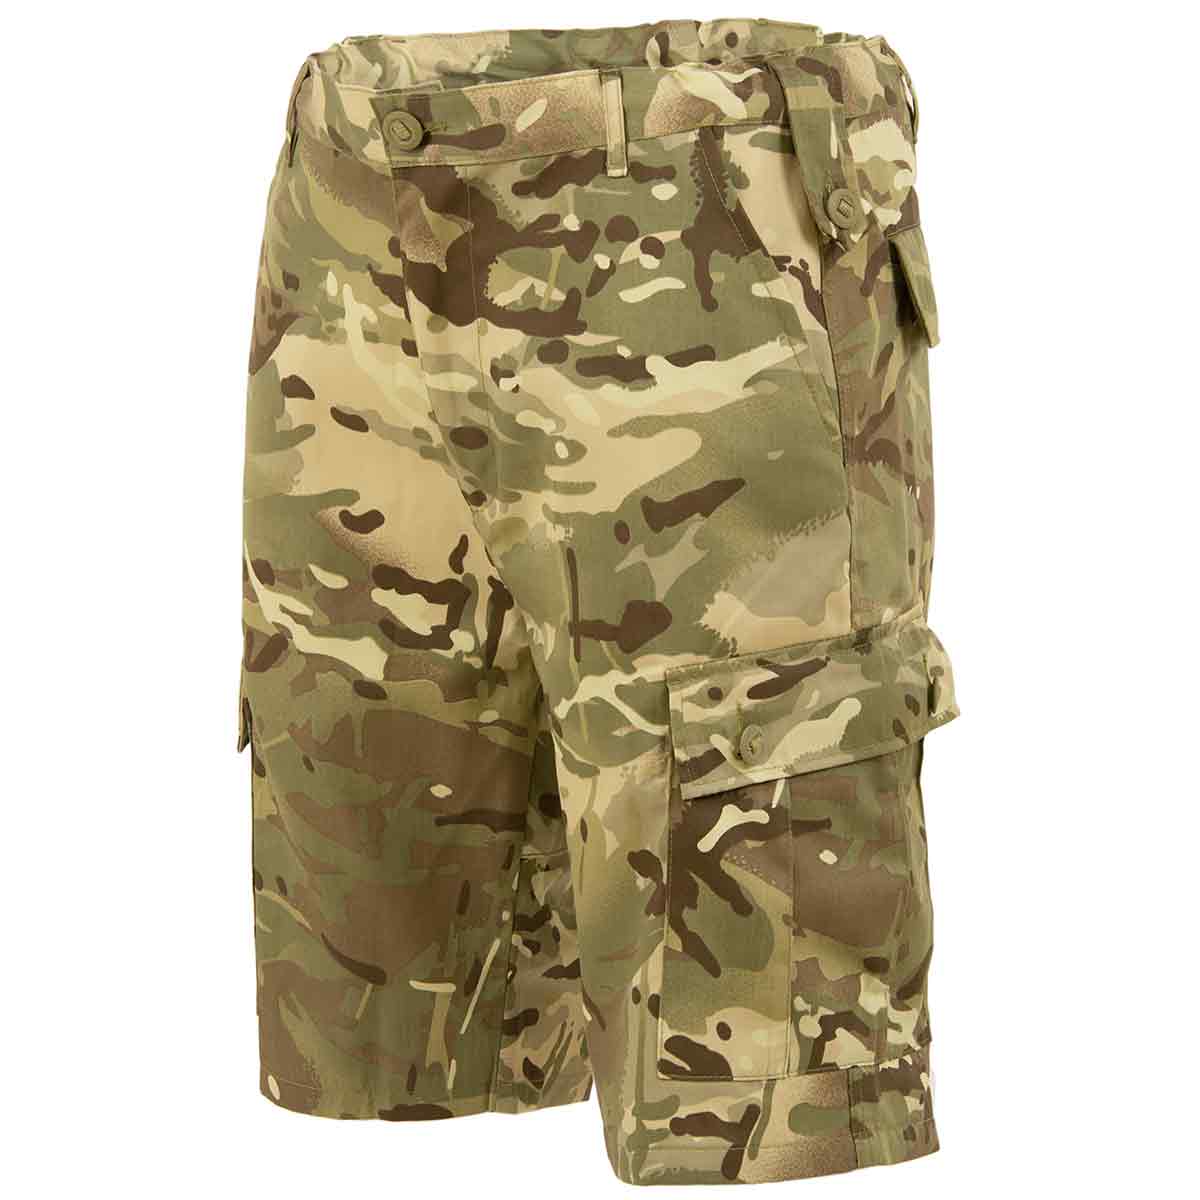 Highlander Elite British Army Style Camo Combat Shorts - John Bull Clothing